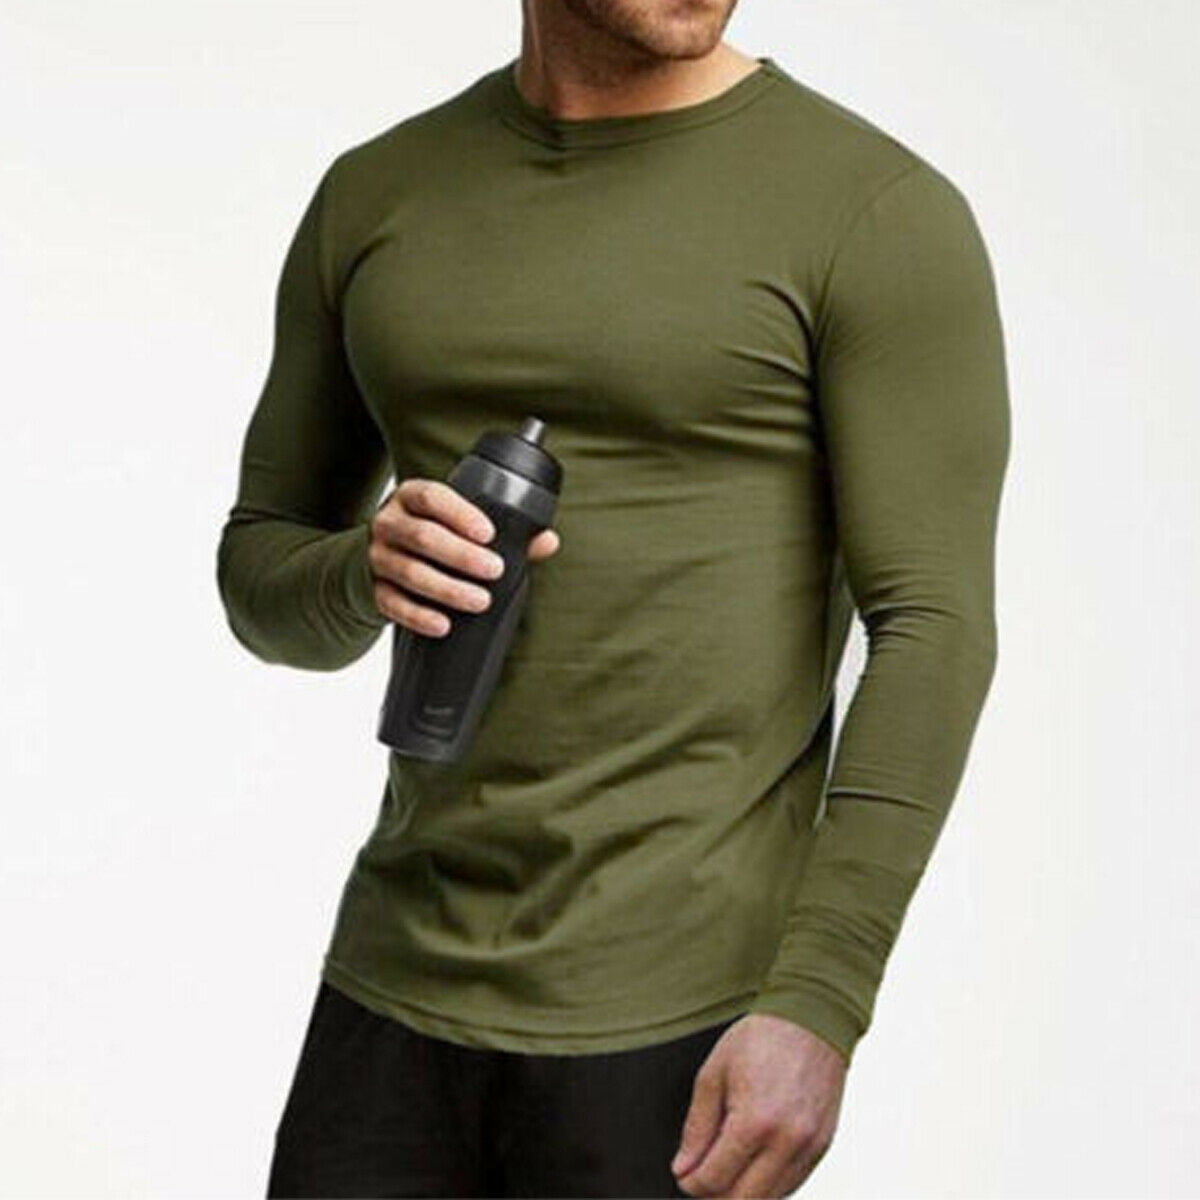 All Brand Long Sleeve Workout Shirt